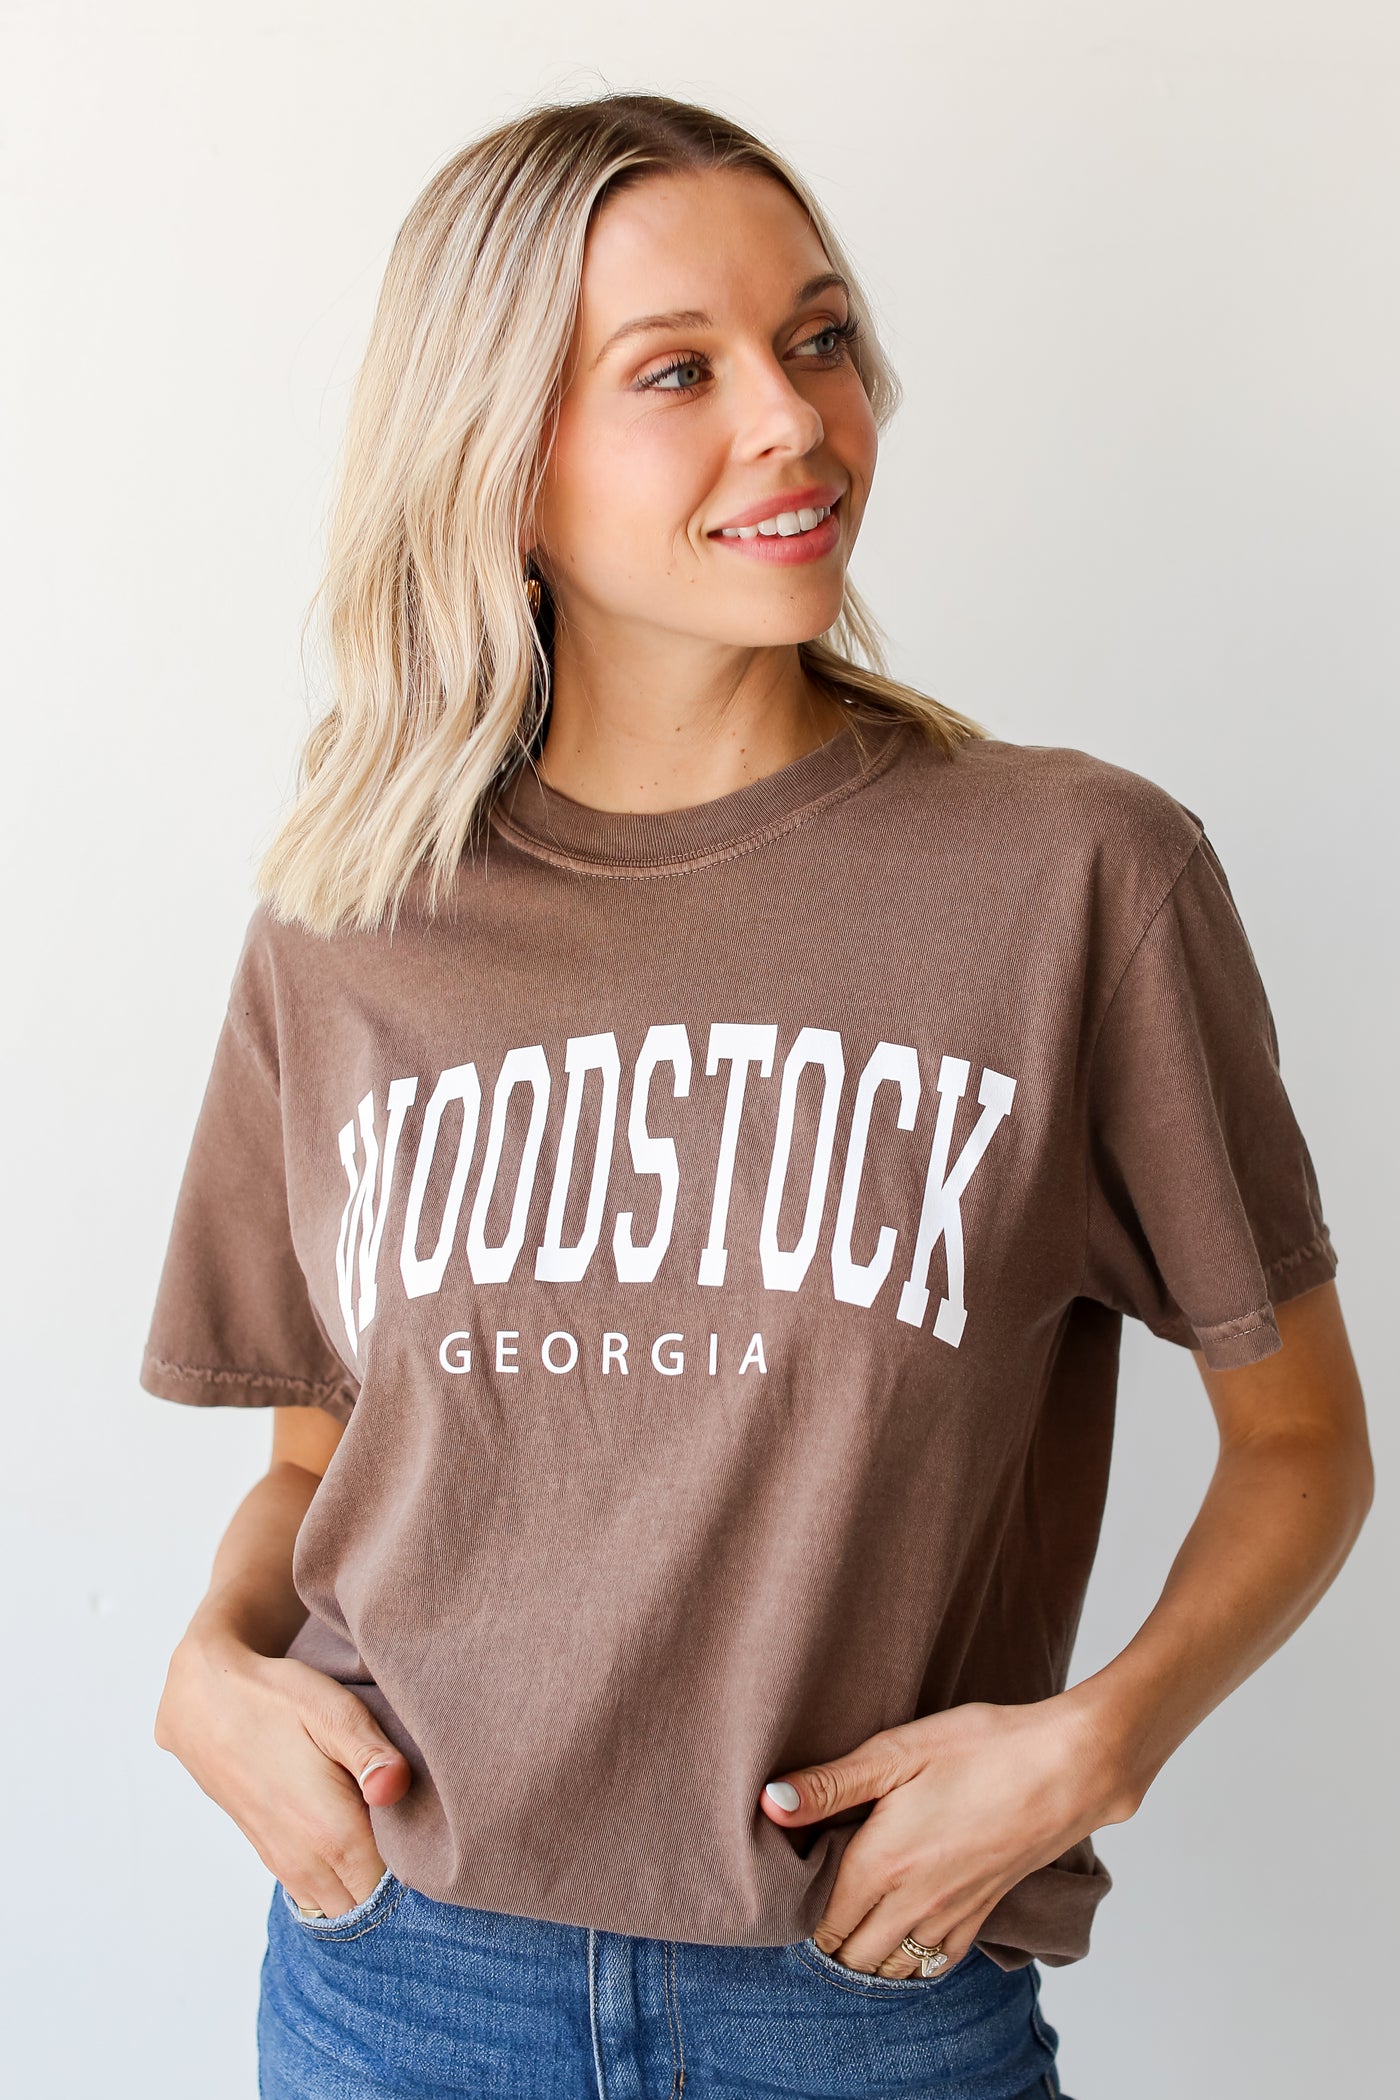 Brown Woodstock Georgia Tee tucked in